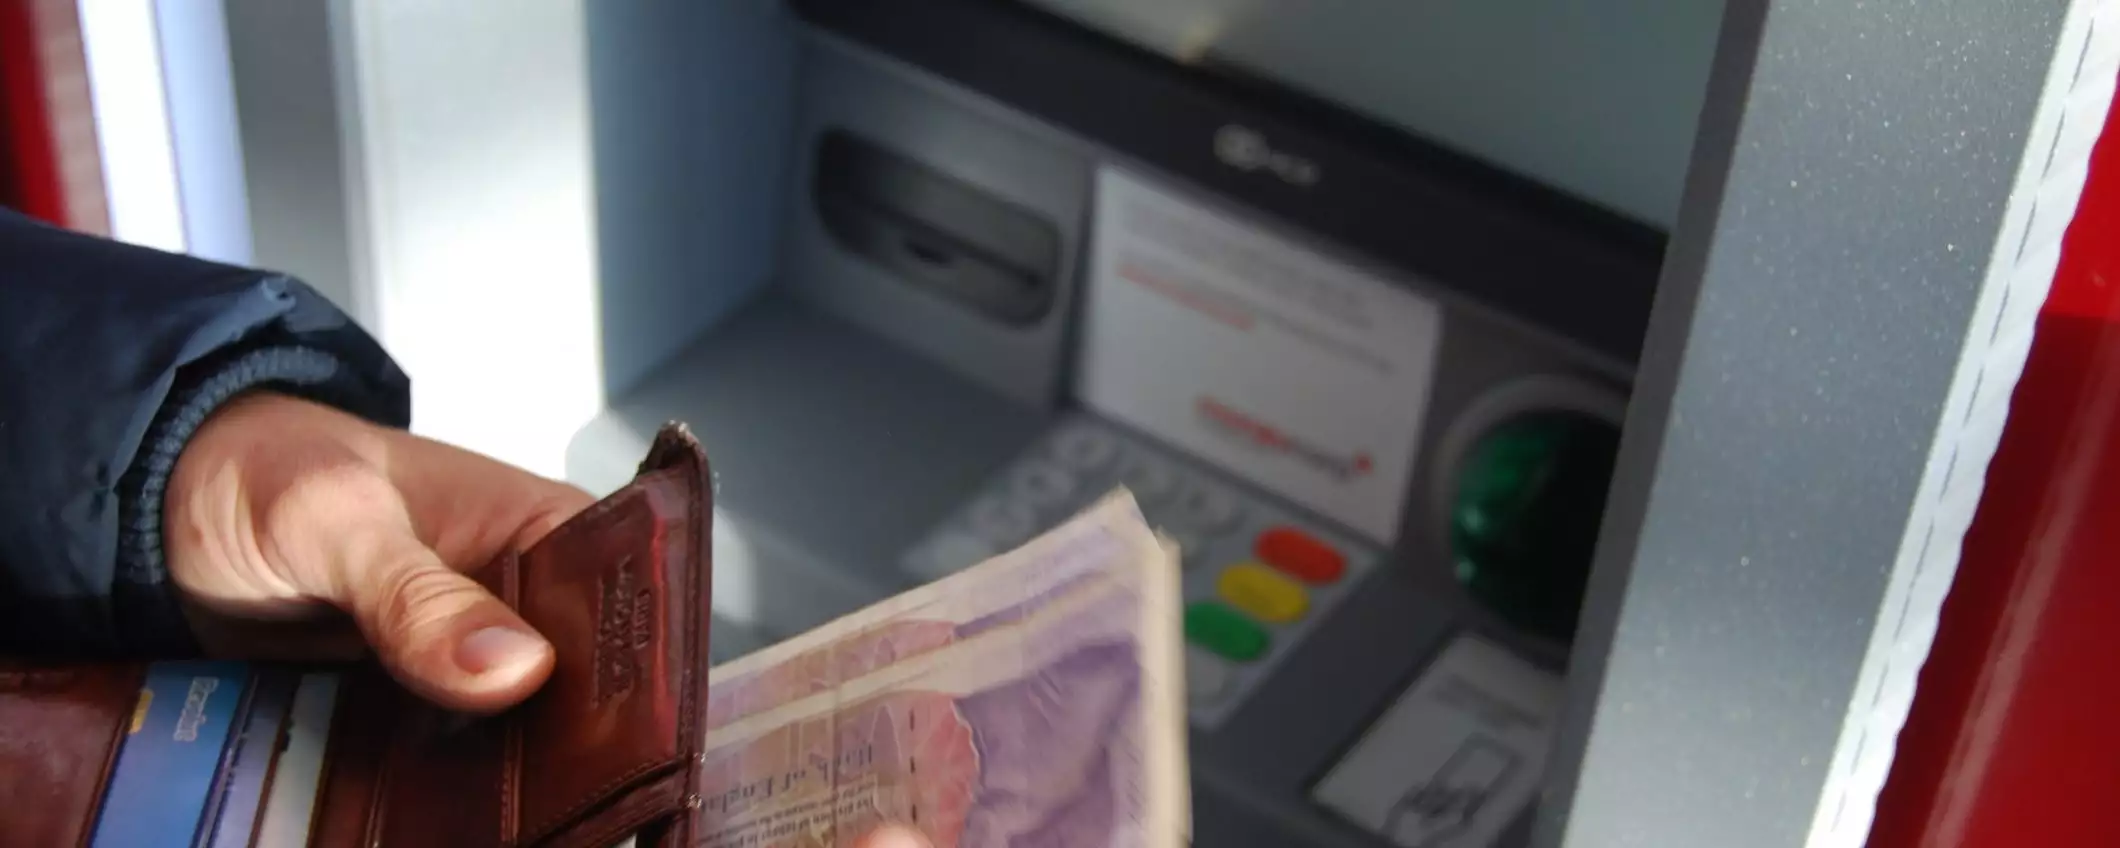 Il Regno Unito chiude gli ATM per criptovalute